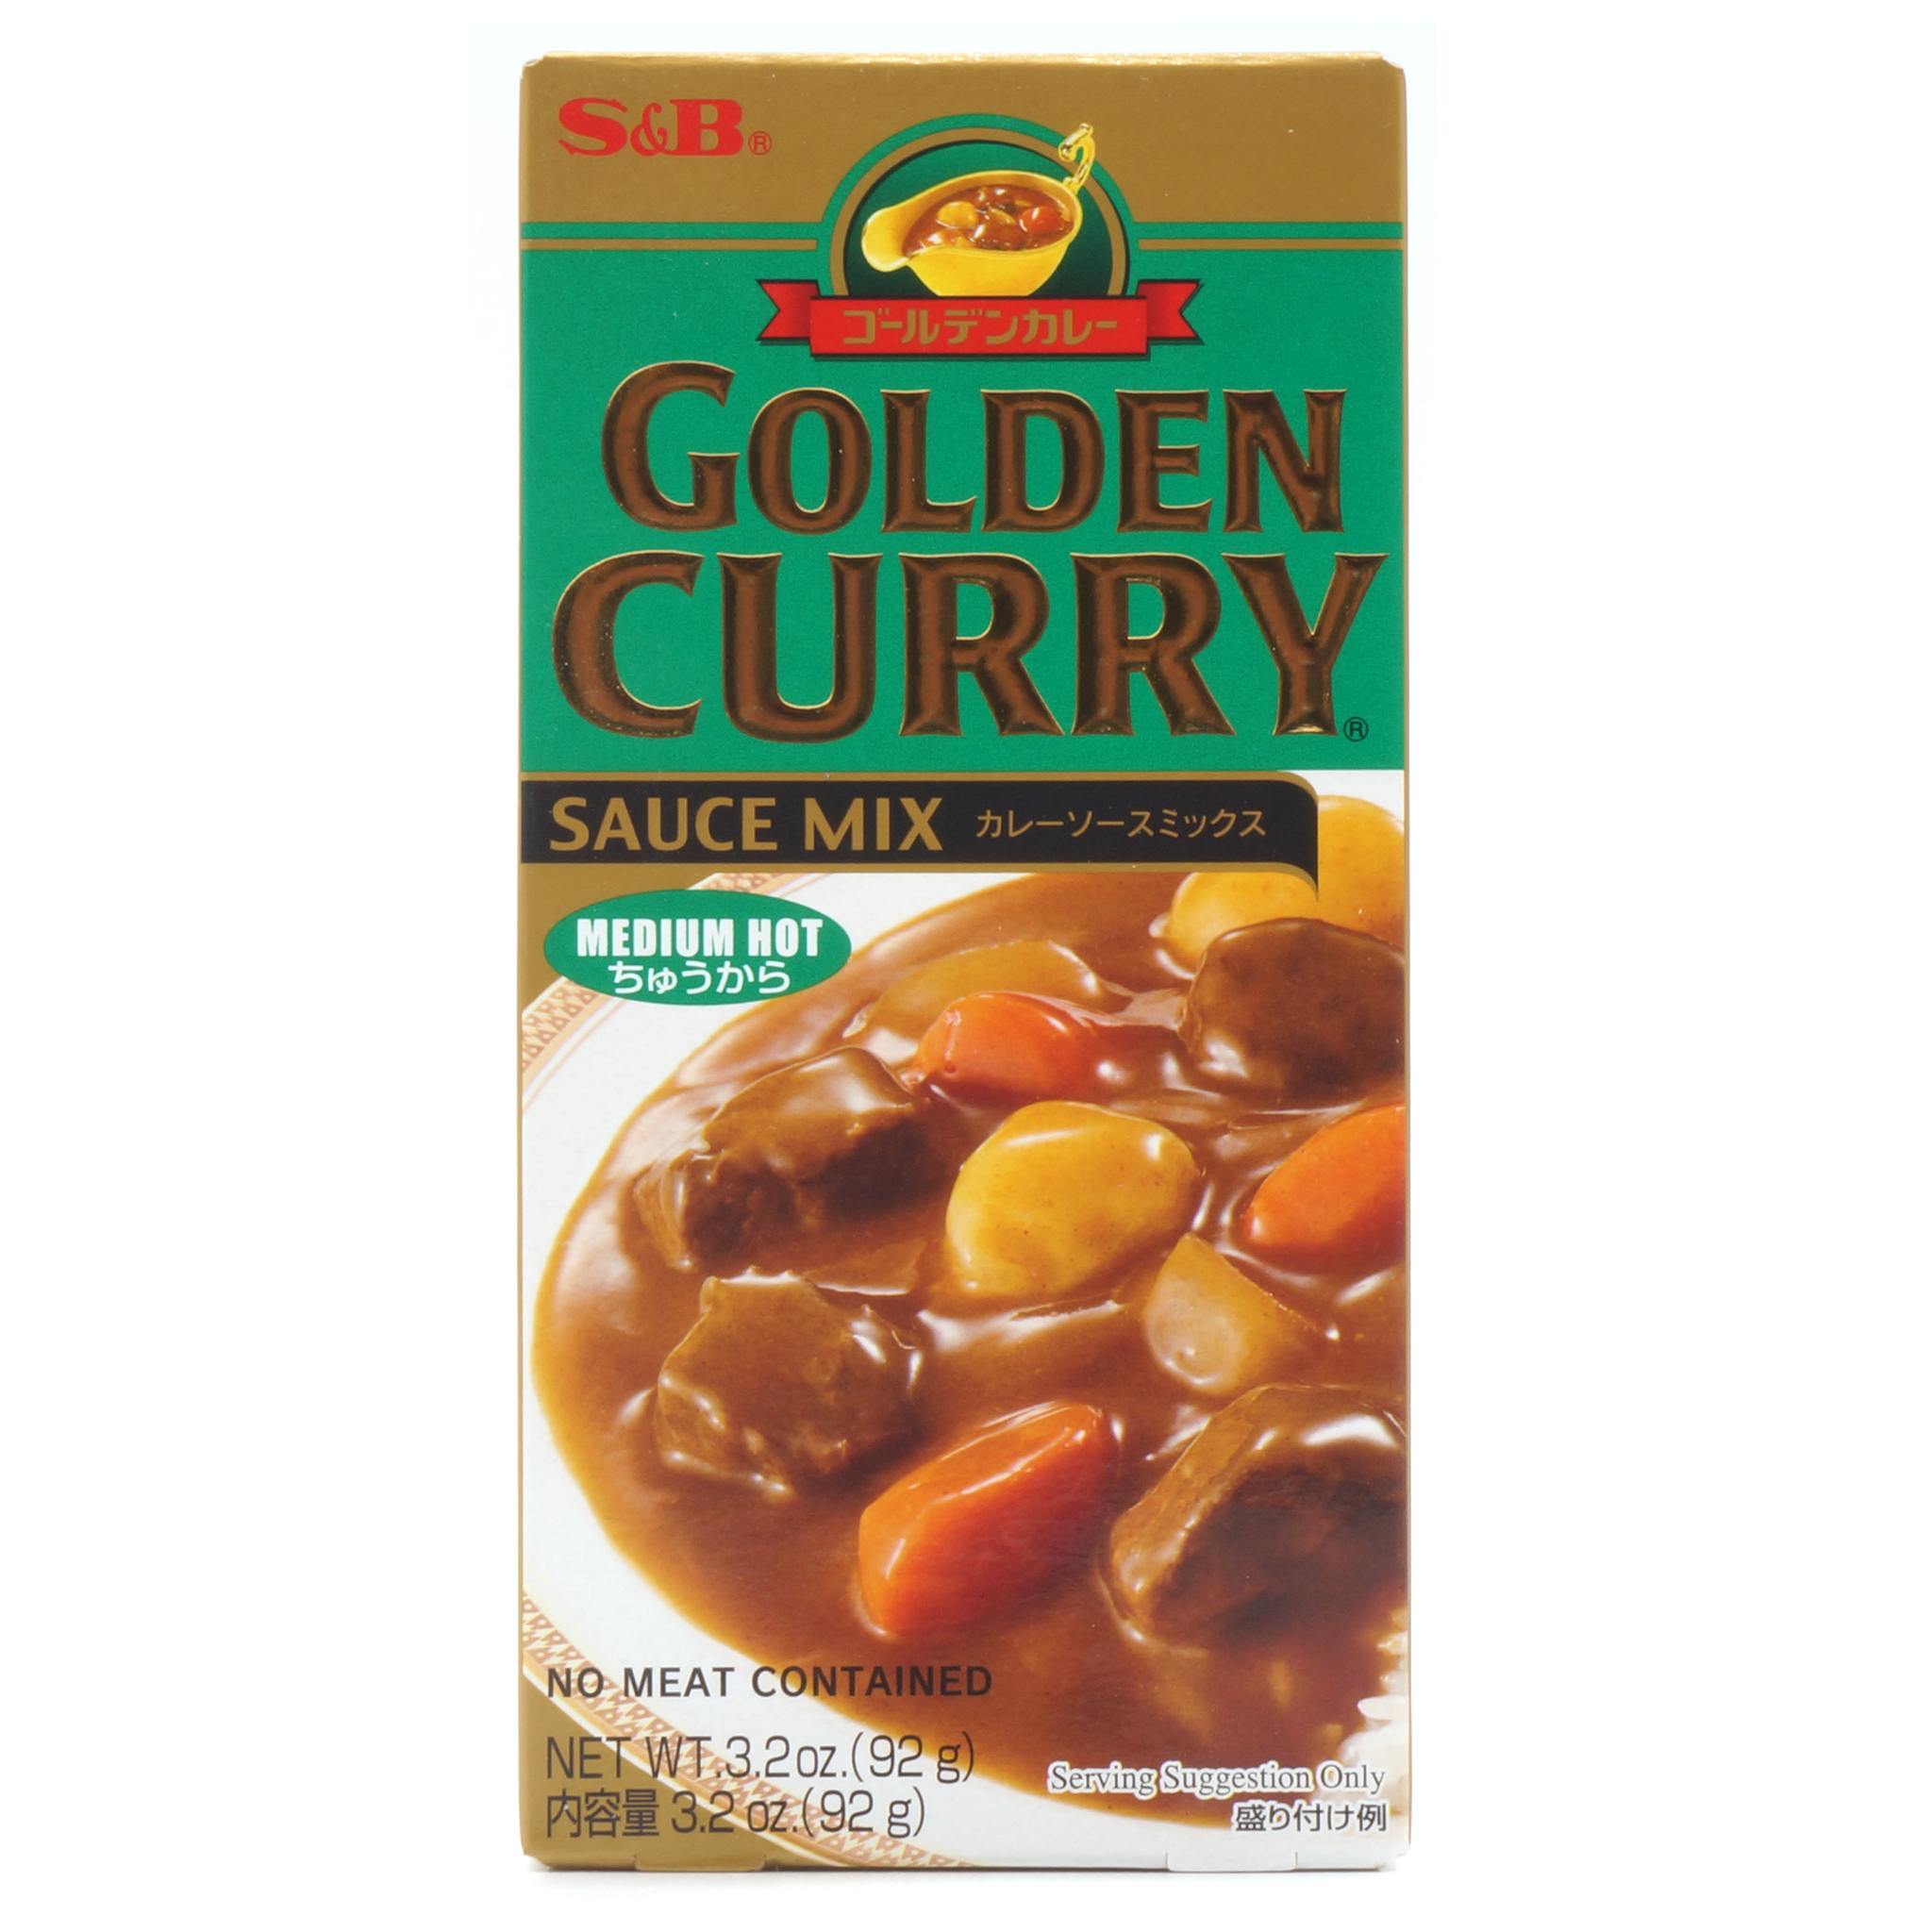 Golden Curry Medium Hot - S&B - 92g